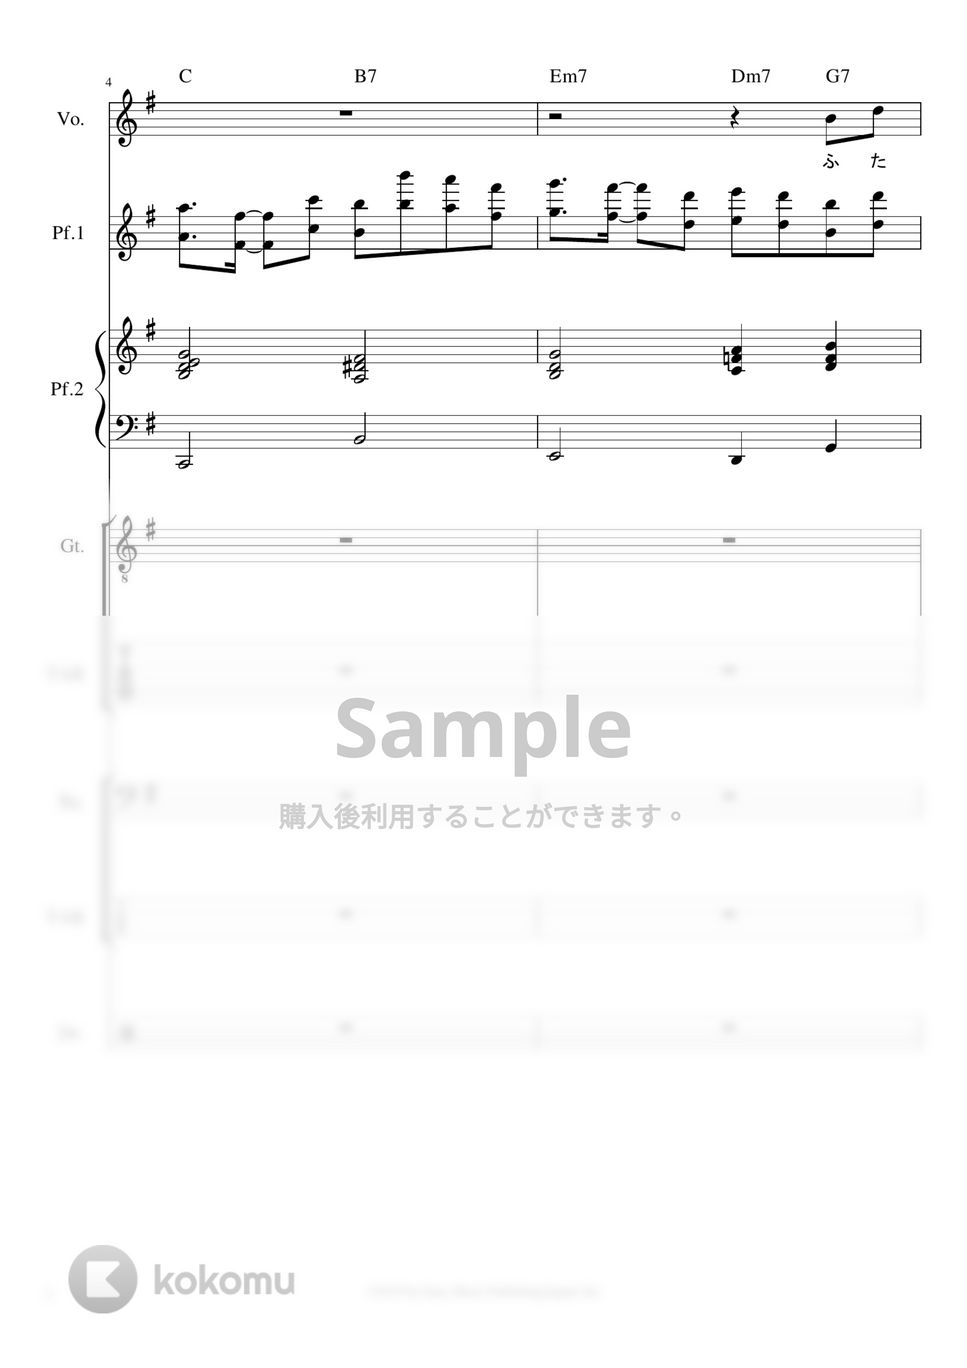 YOASOBI - ※Sample 夜に駆ける※男声アレンジ (男声キーに編曲したバンドピースです。) by ましまし